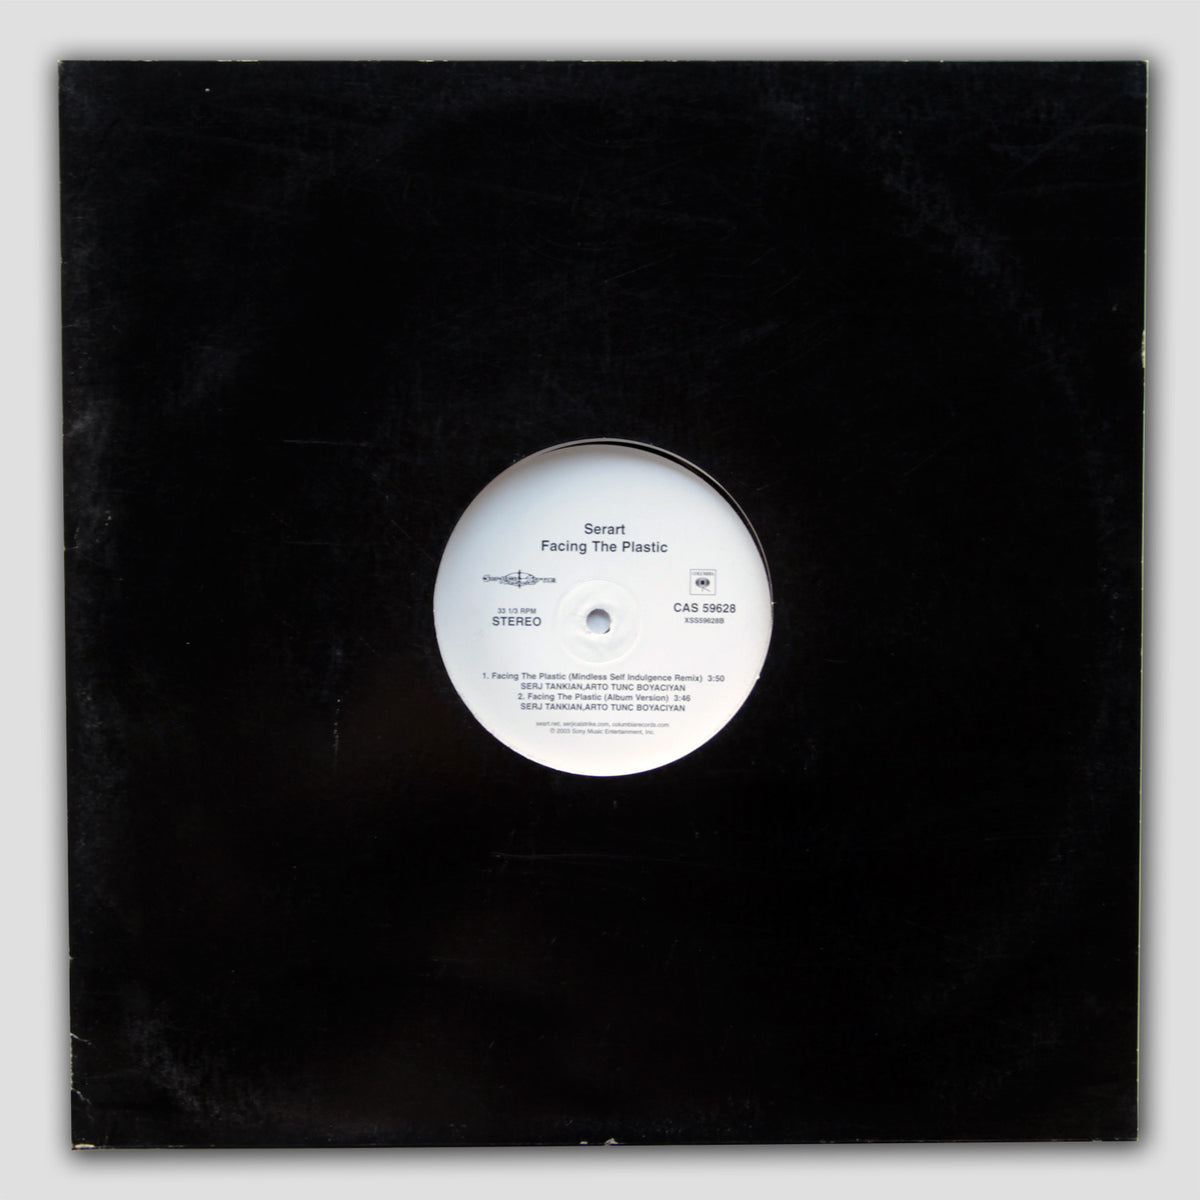 Serart - Narina / Facing The Plastic Remixes Vinyl